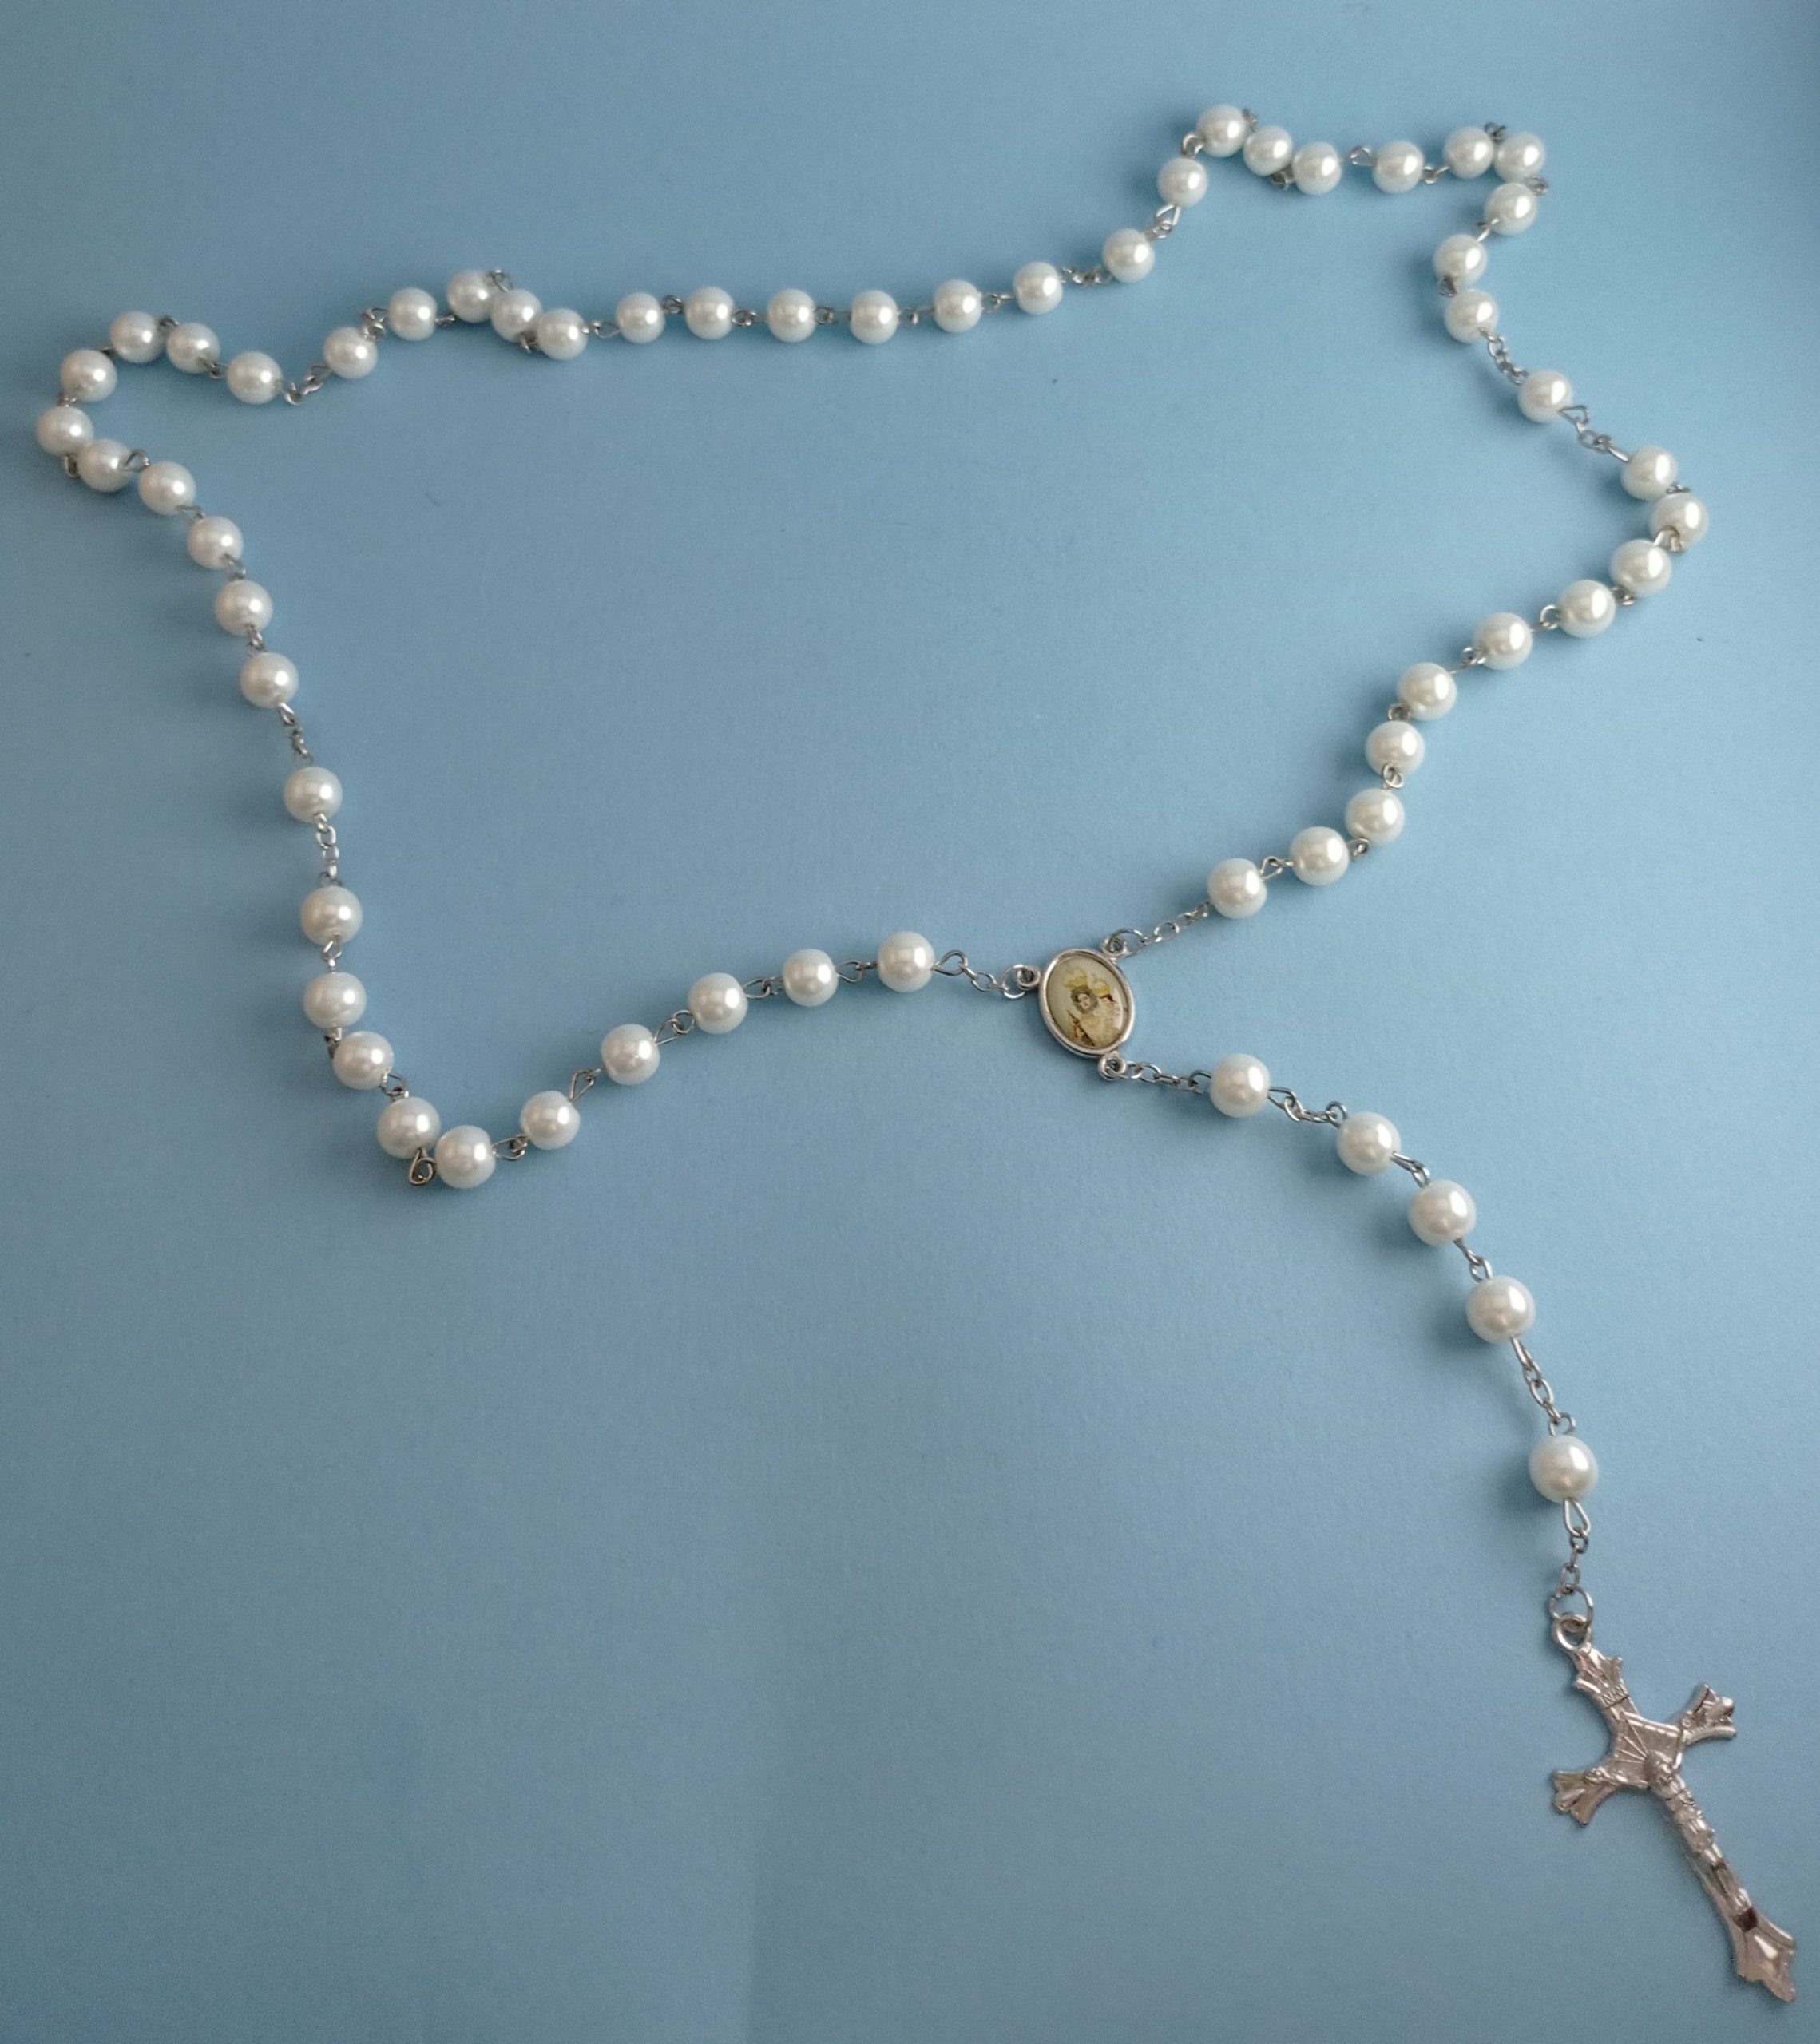 Rosario de perlas - Archicofradía de la Virgen de Araceli